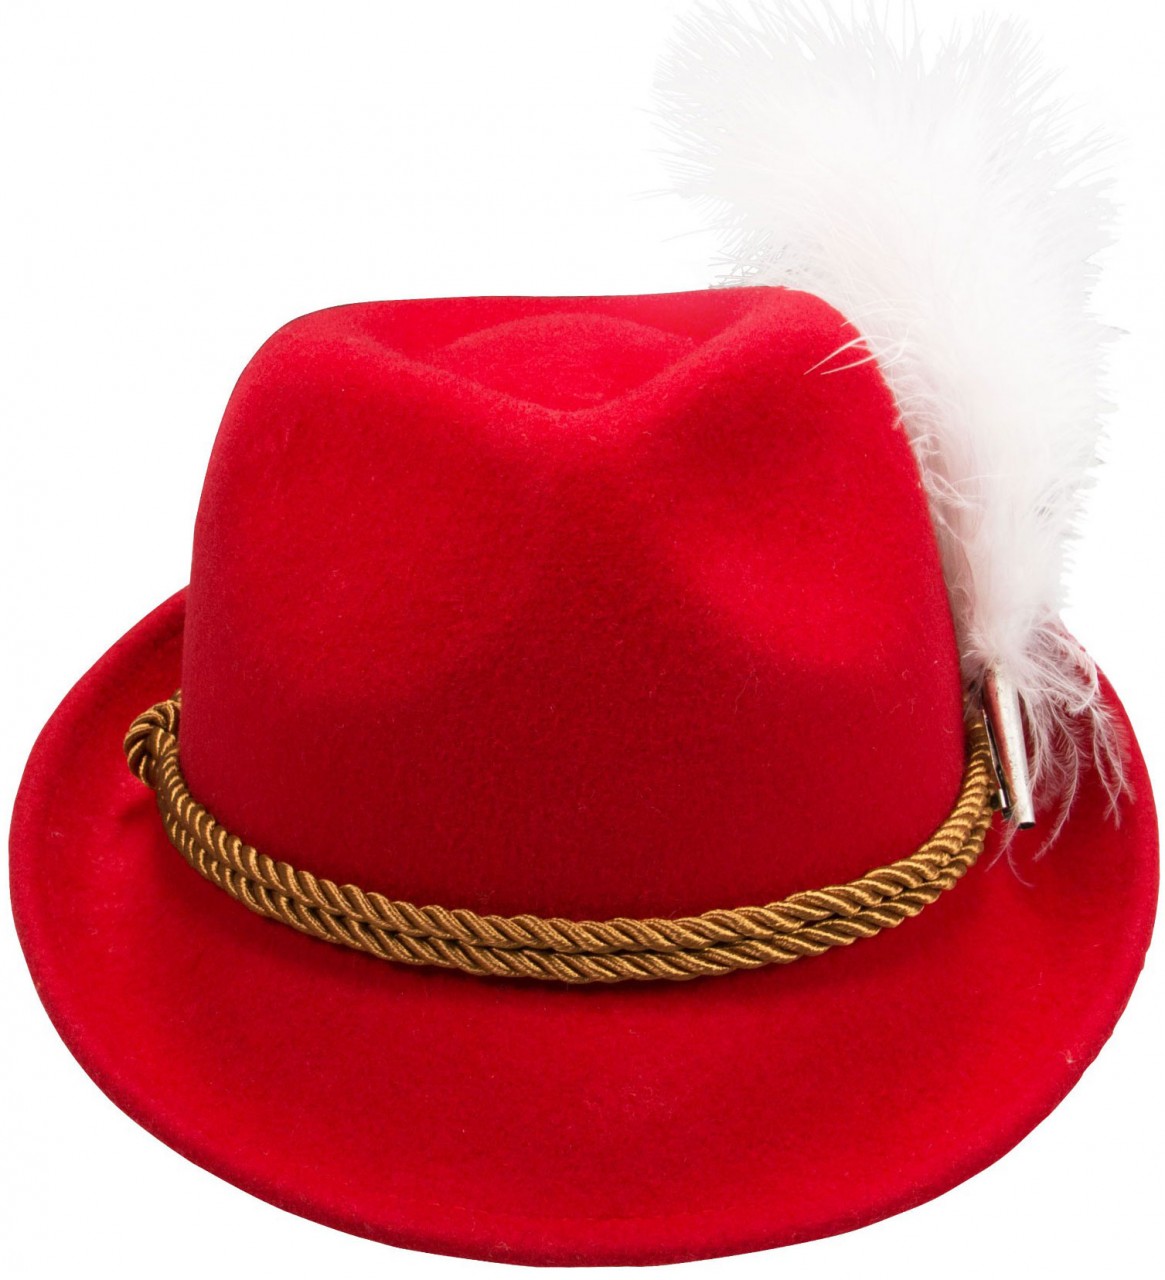 Voorvertoning: Vilten hoed Mona rood